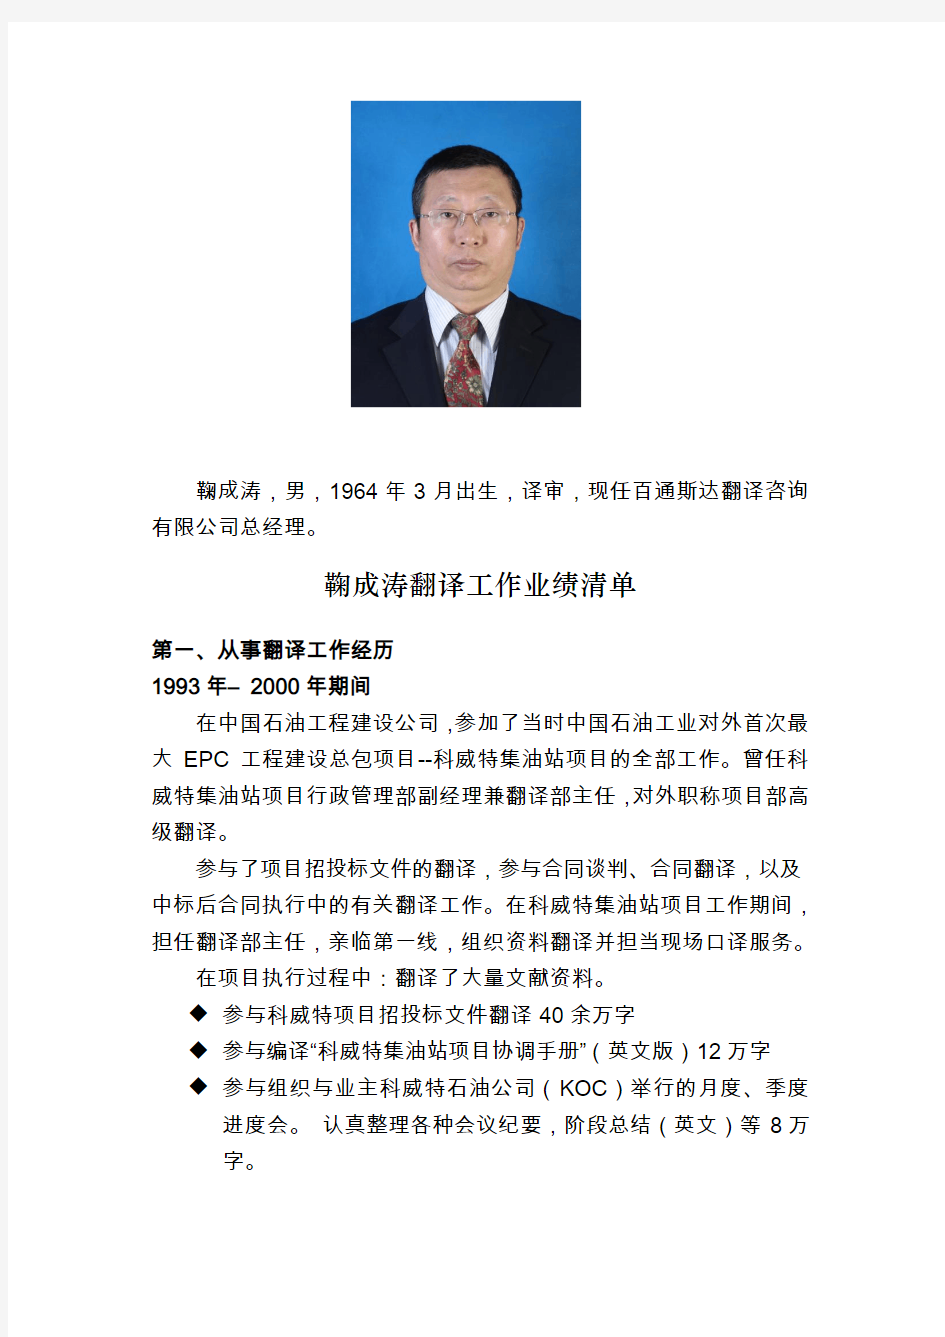 鞠成涛,男,1964年3月出生,译审,现任百通斯达翻译咨询有限公司总经理。